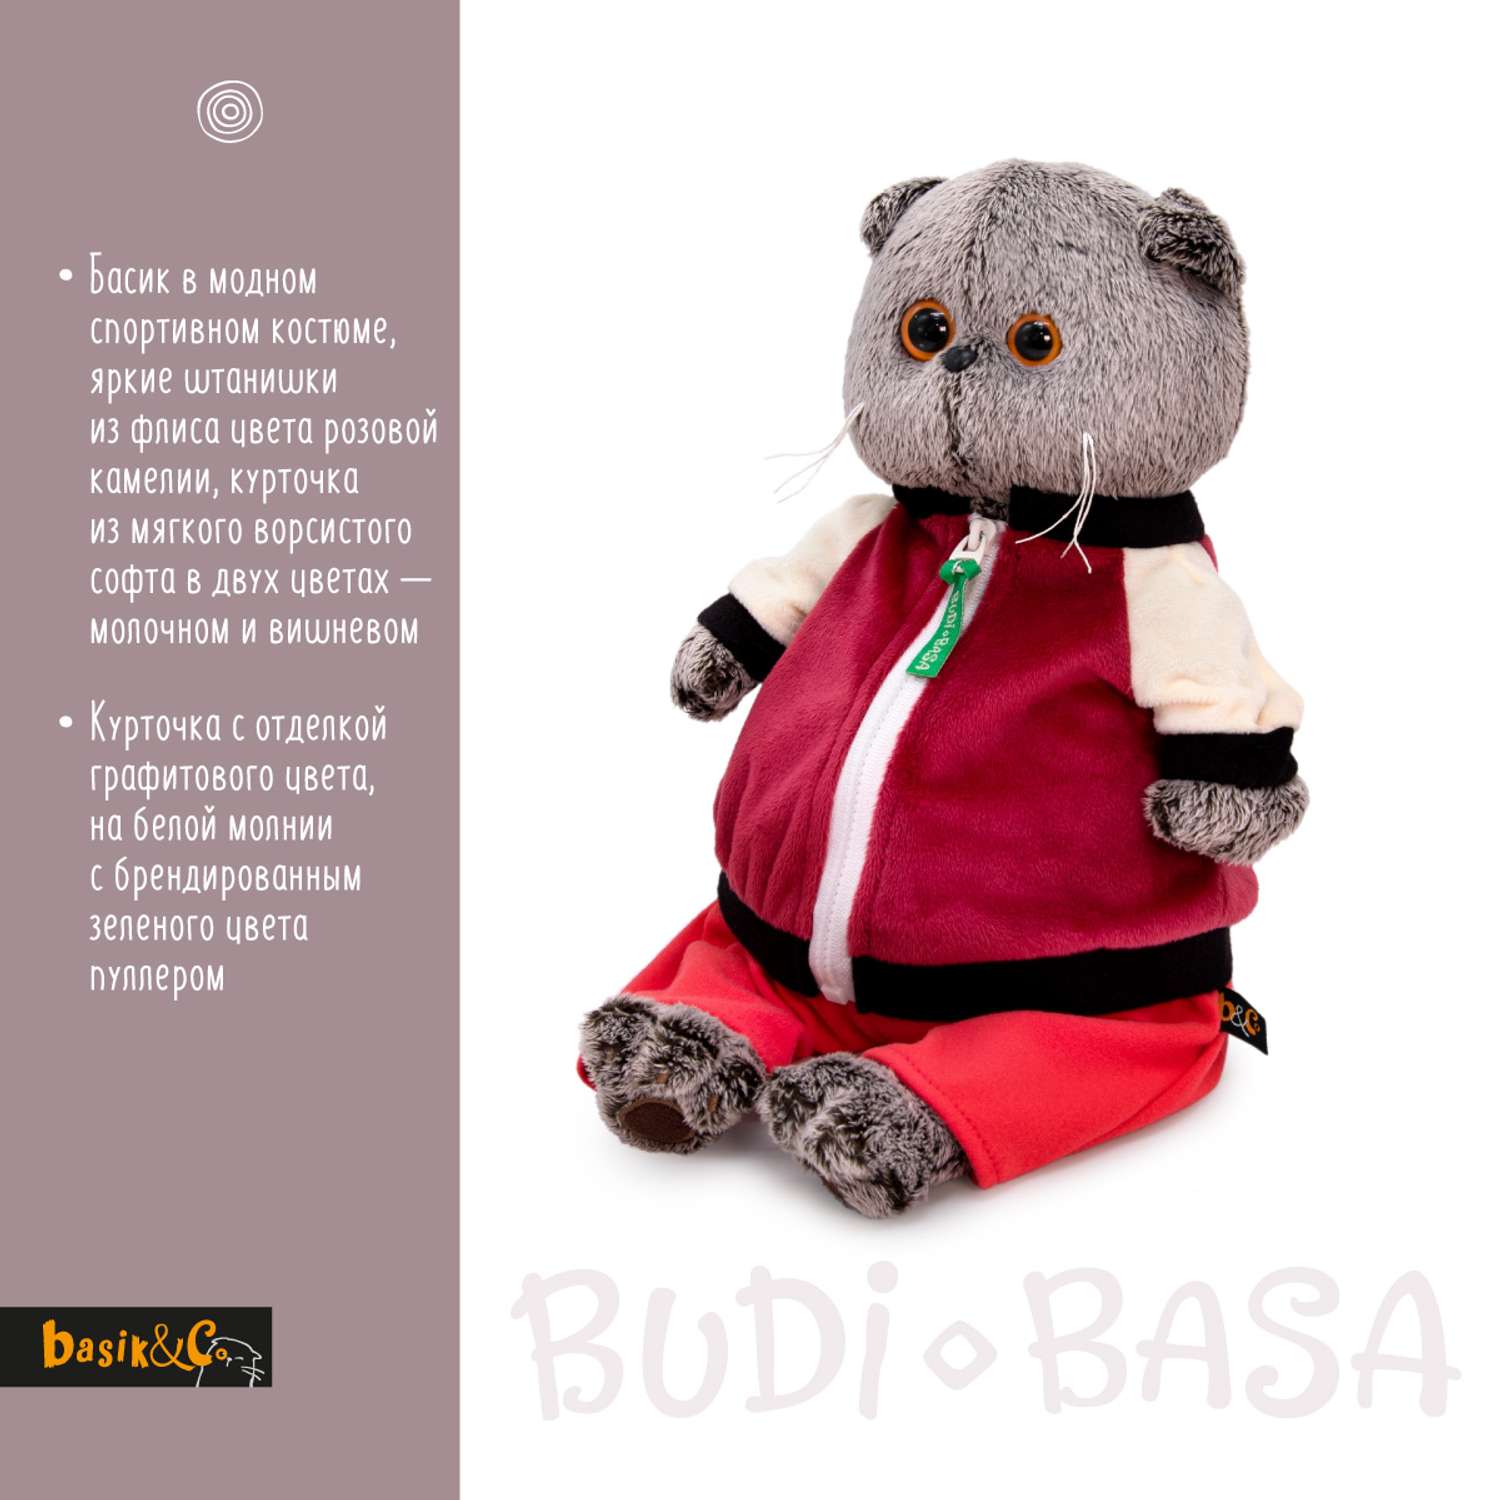 Мягкая игрушка BUDI BASA Басик в спортивной курточке и штанах 30 см Ks30-227 - фото 3